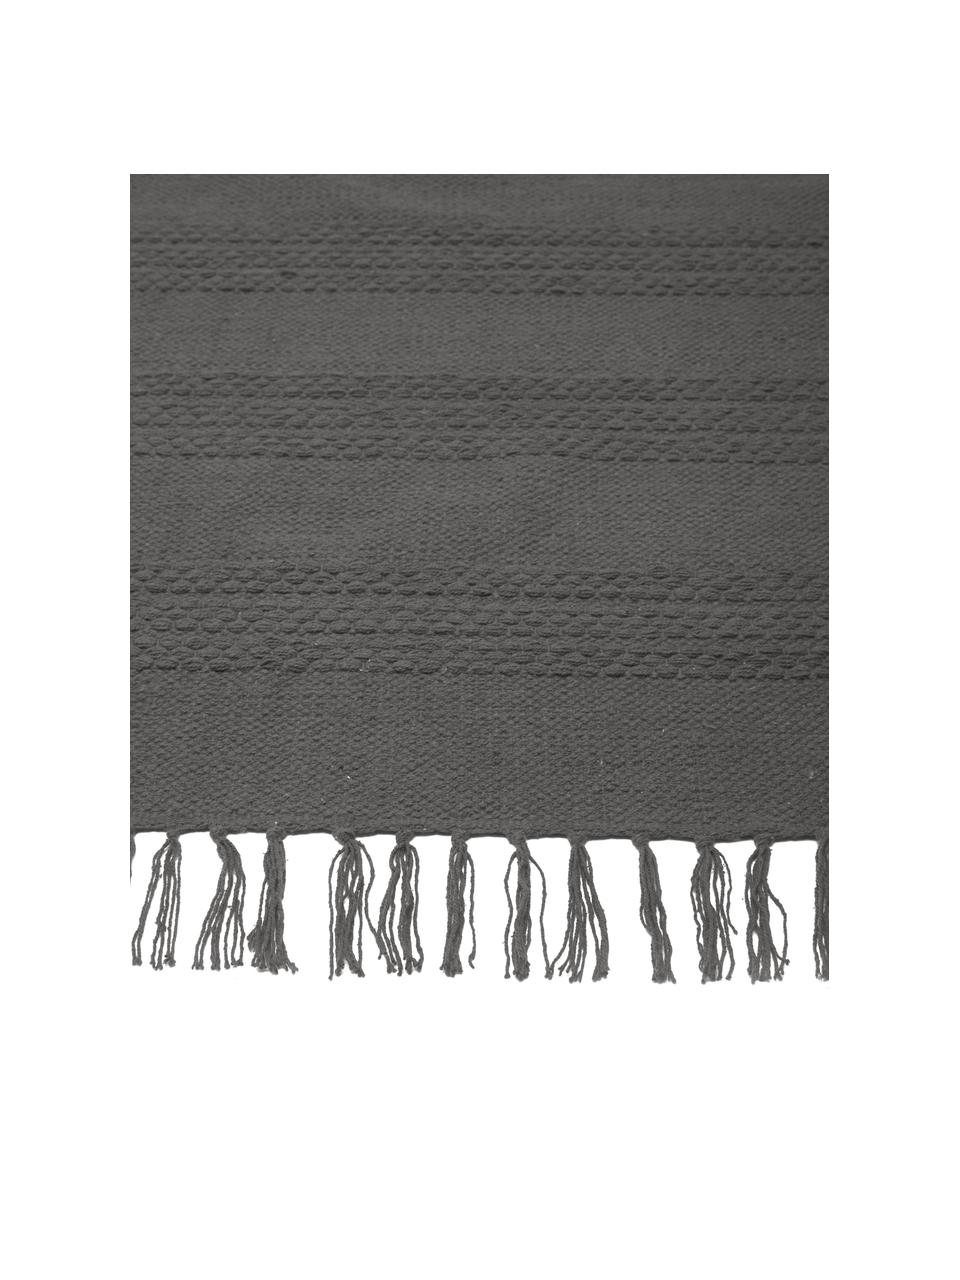 Katoenen vloerkleed Tanya met ton-sur-ton weefpatroon en franjes, 100% katoen, Donkergrijs, 200 x 300 cm